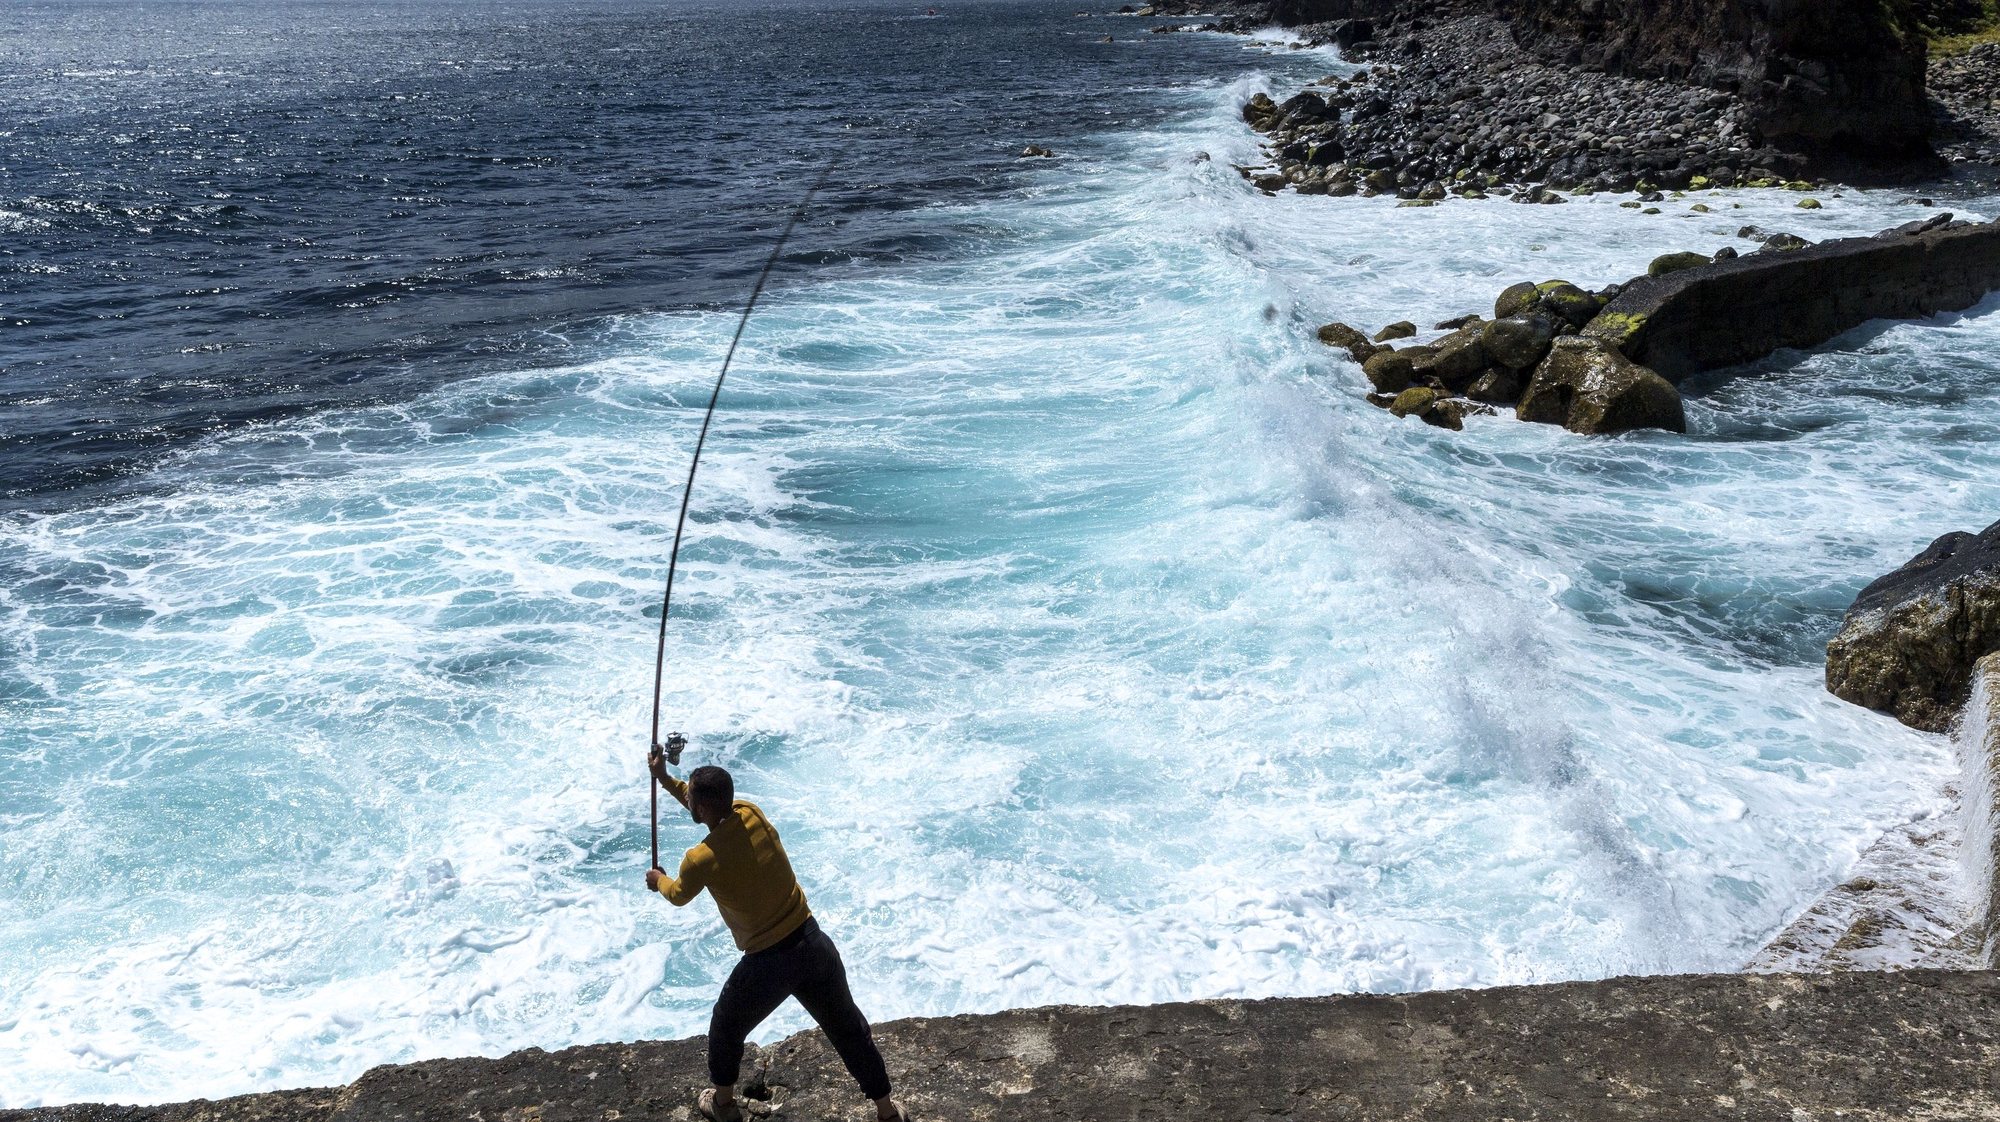 Um popular pesca numa praia do concelho do Nordeste, Ilha de São Miguel, Açores, 18 de maio de 2020.  O concelho do Nordeste foi último do país a sair da cerca sanitária por causa da covid-19. EDUARDO COSTA /LUSA